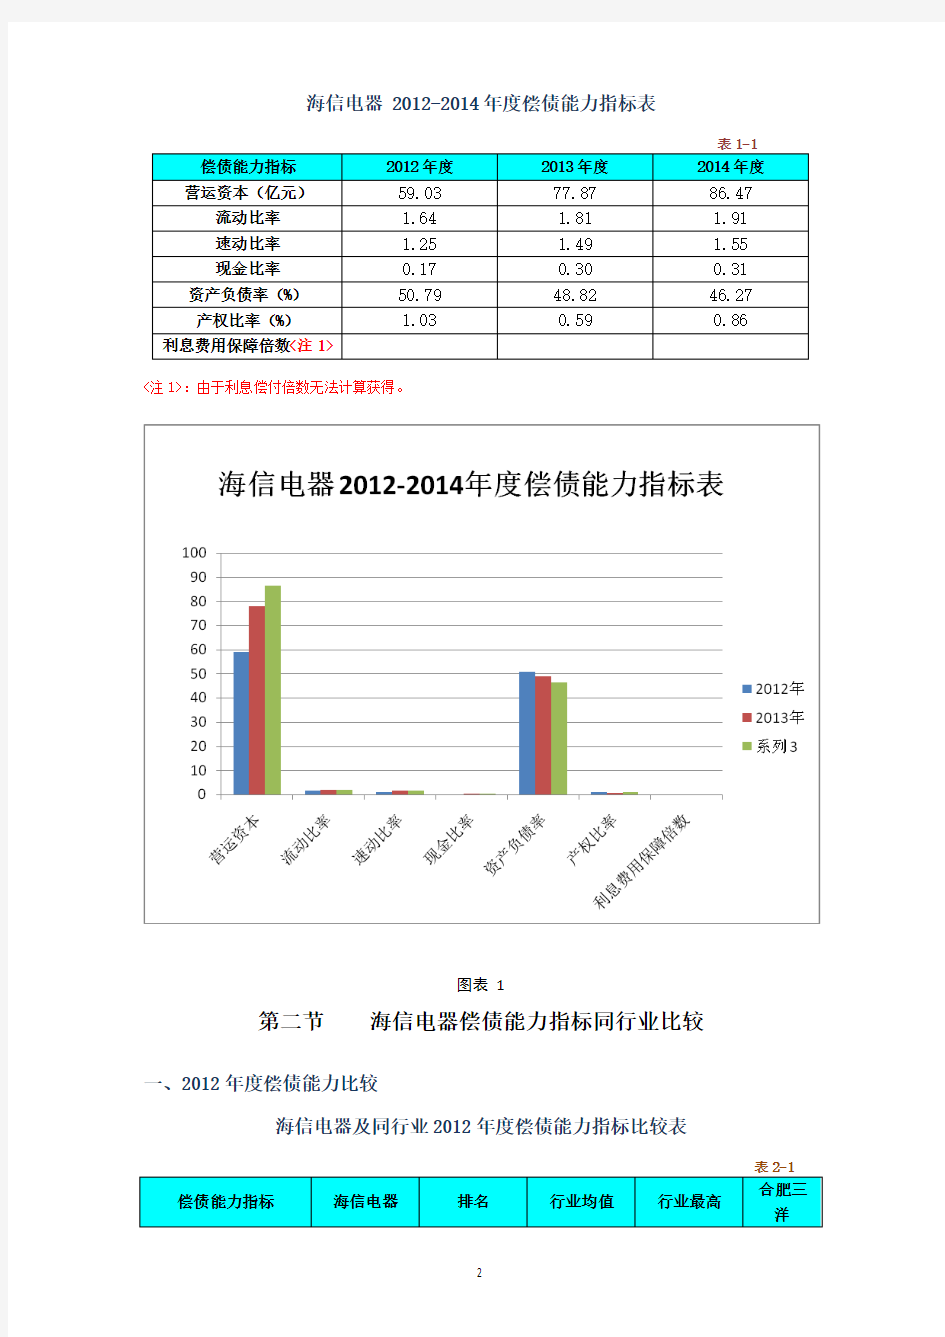 海信电器-偿债能力分析2012-2014..